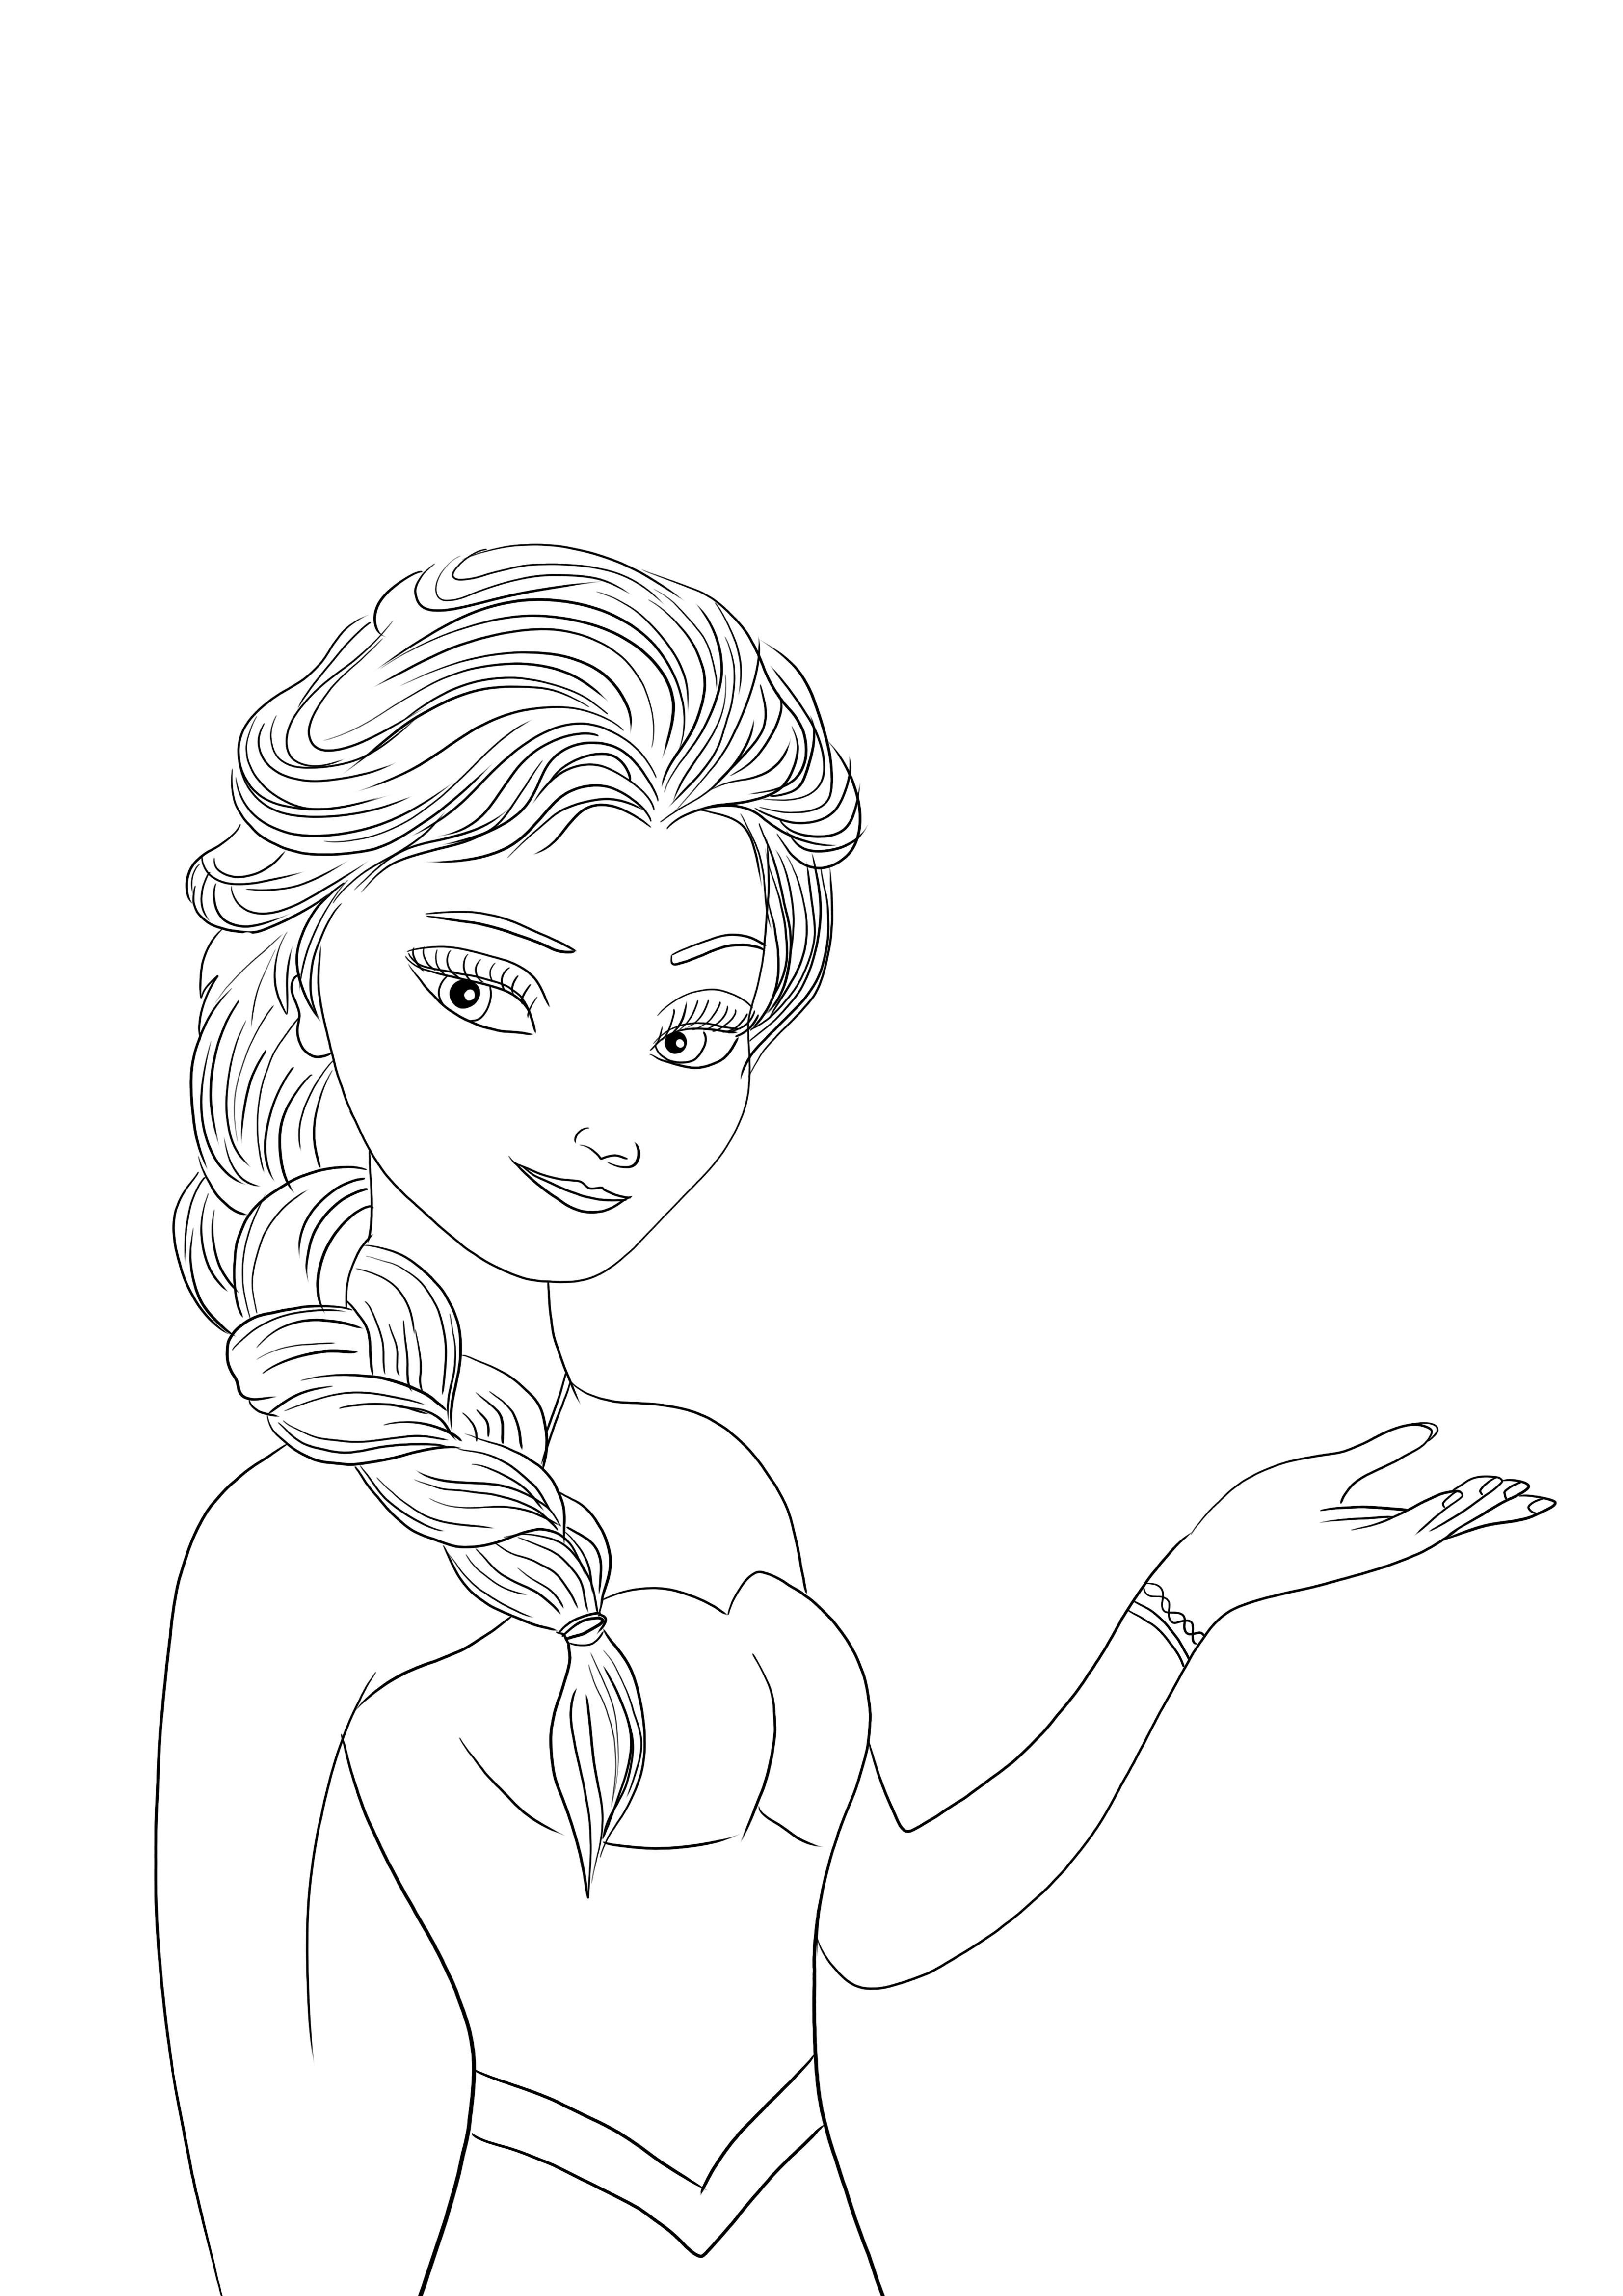 Beautiful Beautiful Elsa dari film Frozen gratis untuk diunduh dan mudah diwarnai dari film Frozen gratis untuk diunduh dan mudah diwarnai